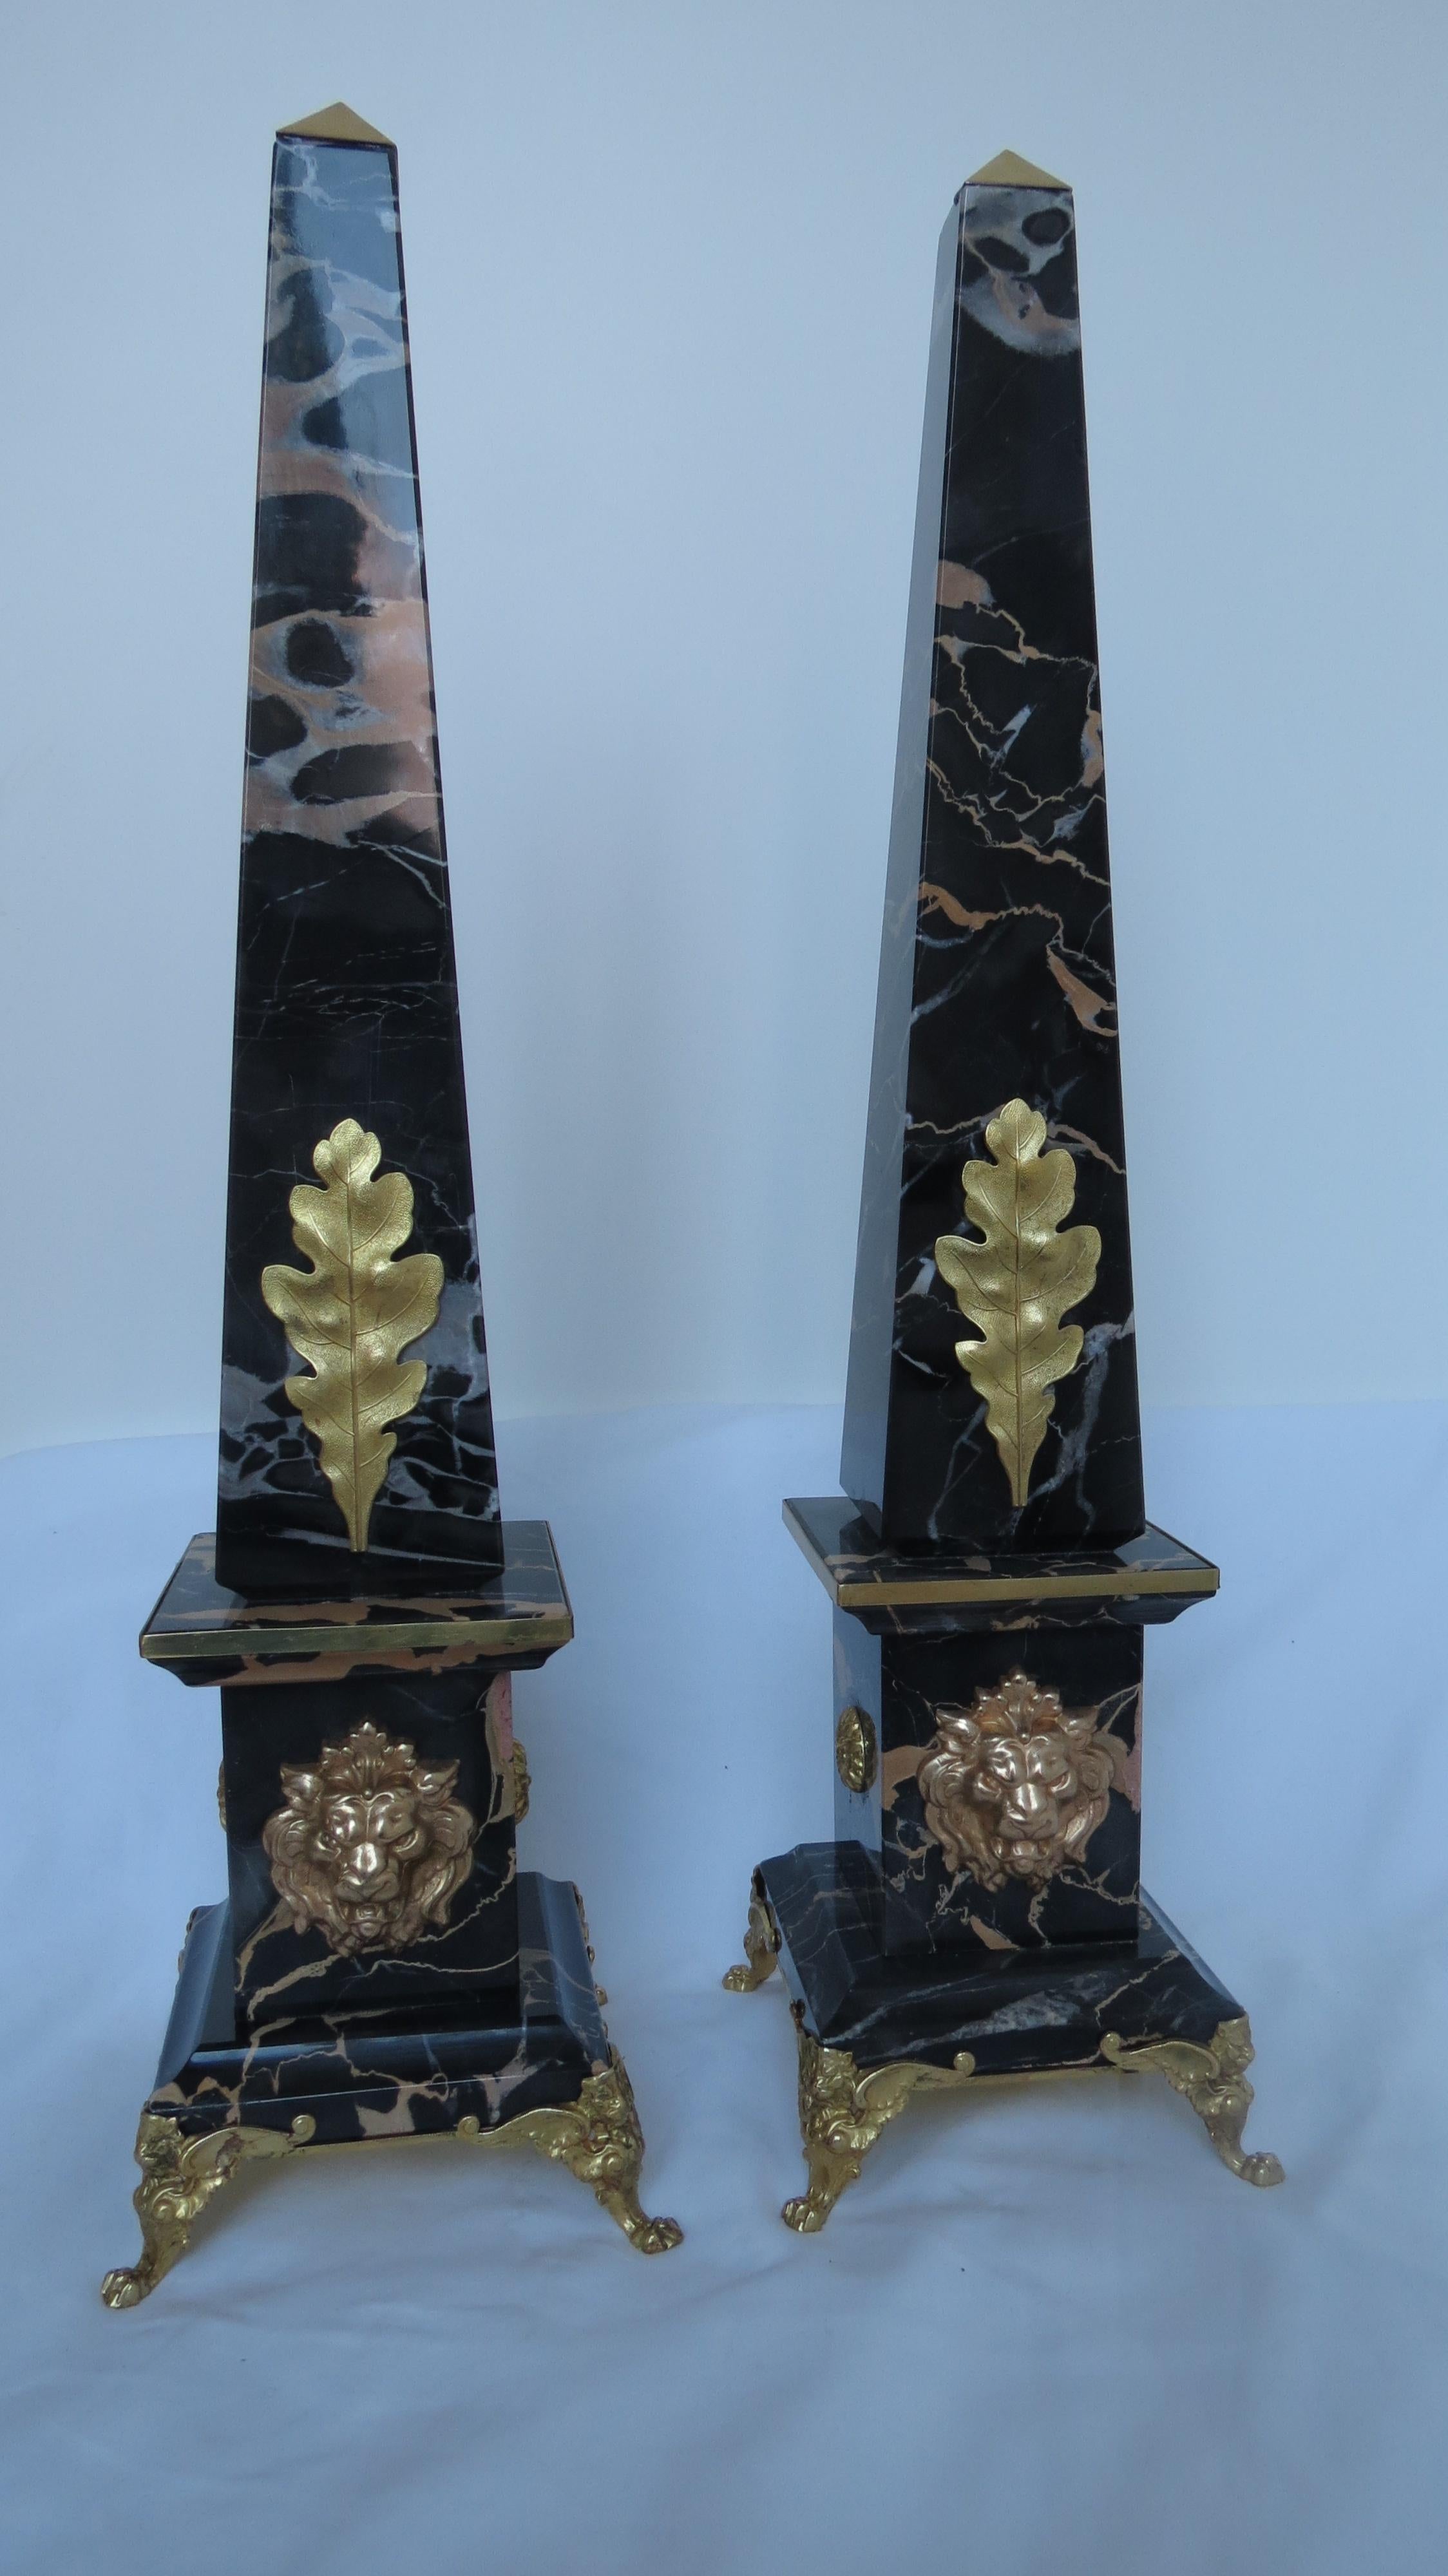 Paar italienische Obelisken aus Portoromarmor und Bronze, goldener Löwe -Grand Tour collection-
produziert von Lorenzo Ciompi, 2017 entworfen, produziert und ausgeführt direkt in Exklusivität für Compendio Gallery auf limitierte Auflage von